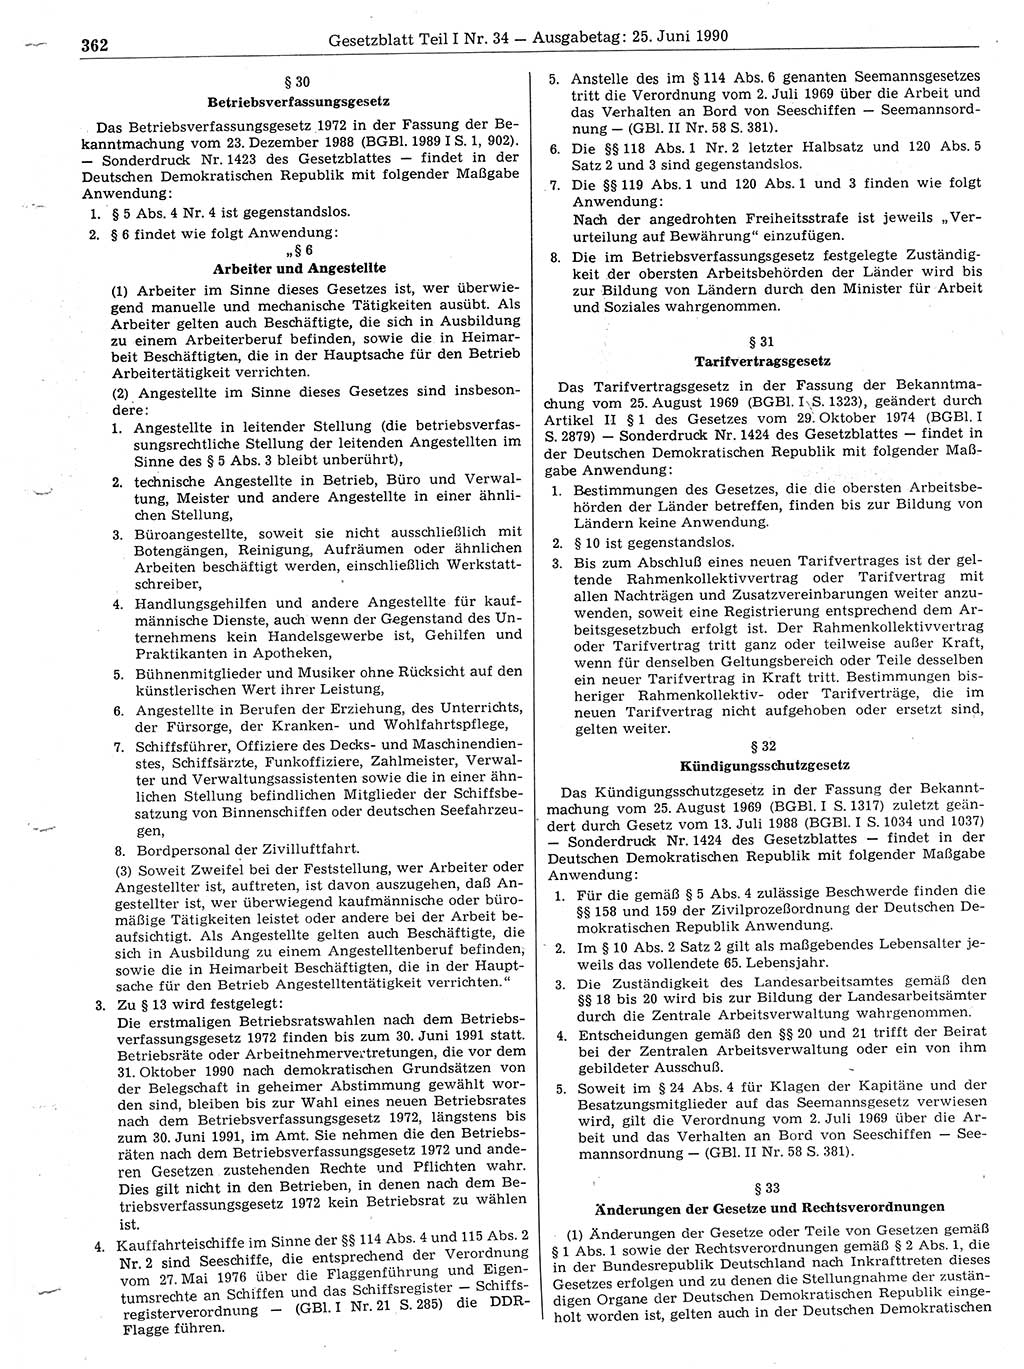 Gesetzblatt (GBl.) der Deutschen Demokratischen Republik (DDR) Teil Ⅰ 1990, Seite 362 (GBl. DDR Ⅰ 1990, S. 362)